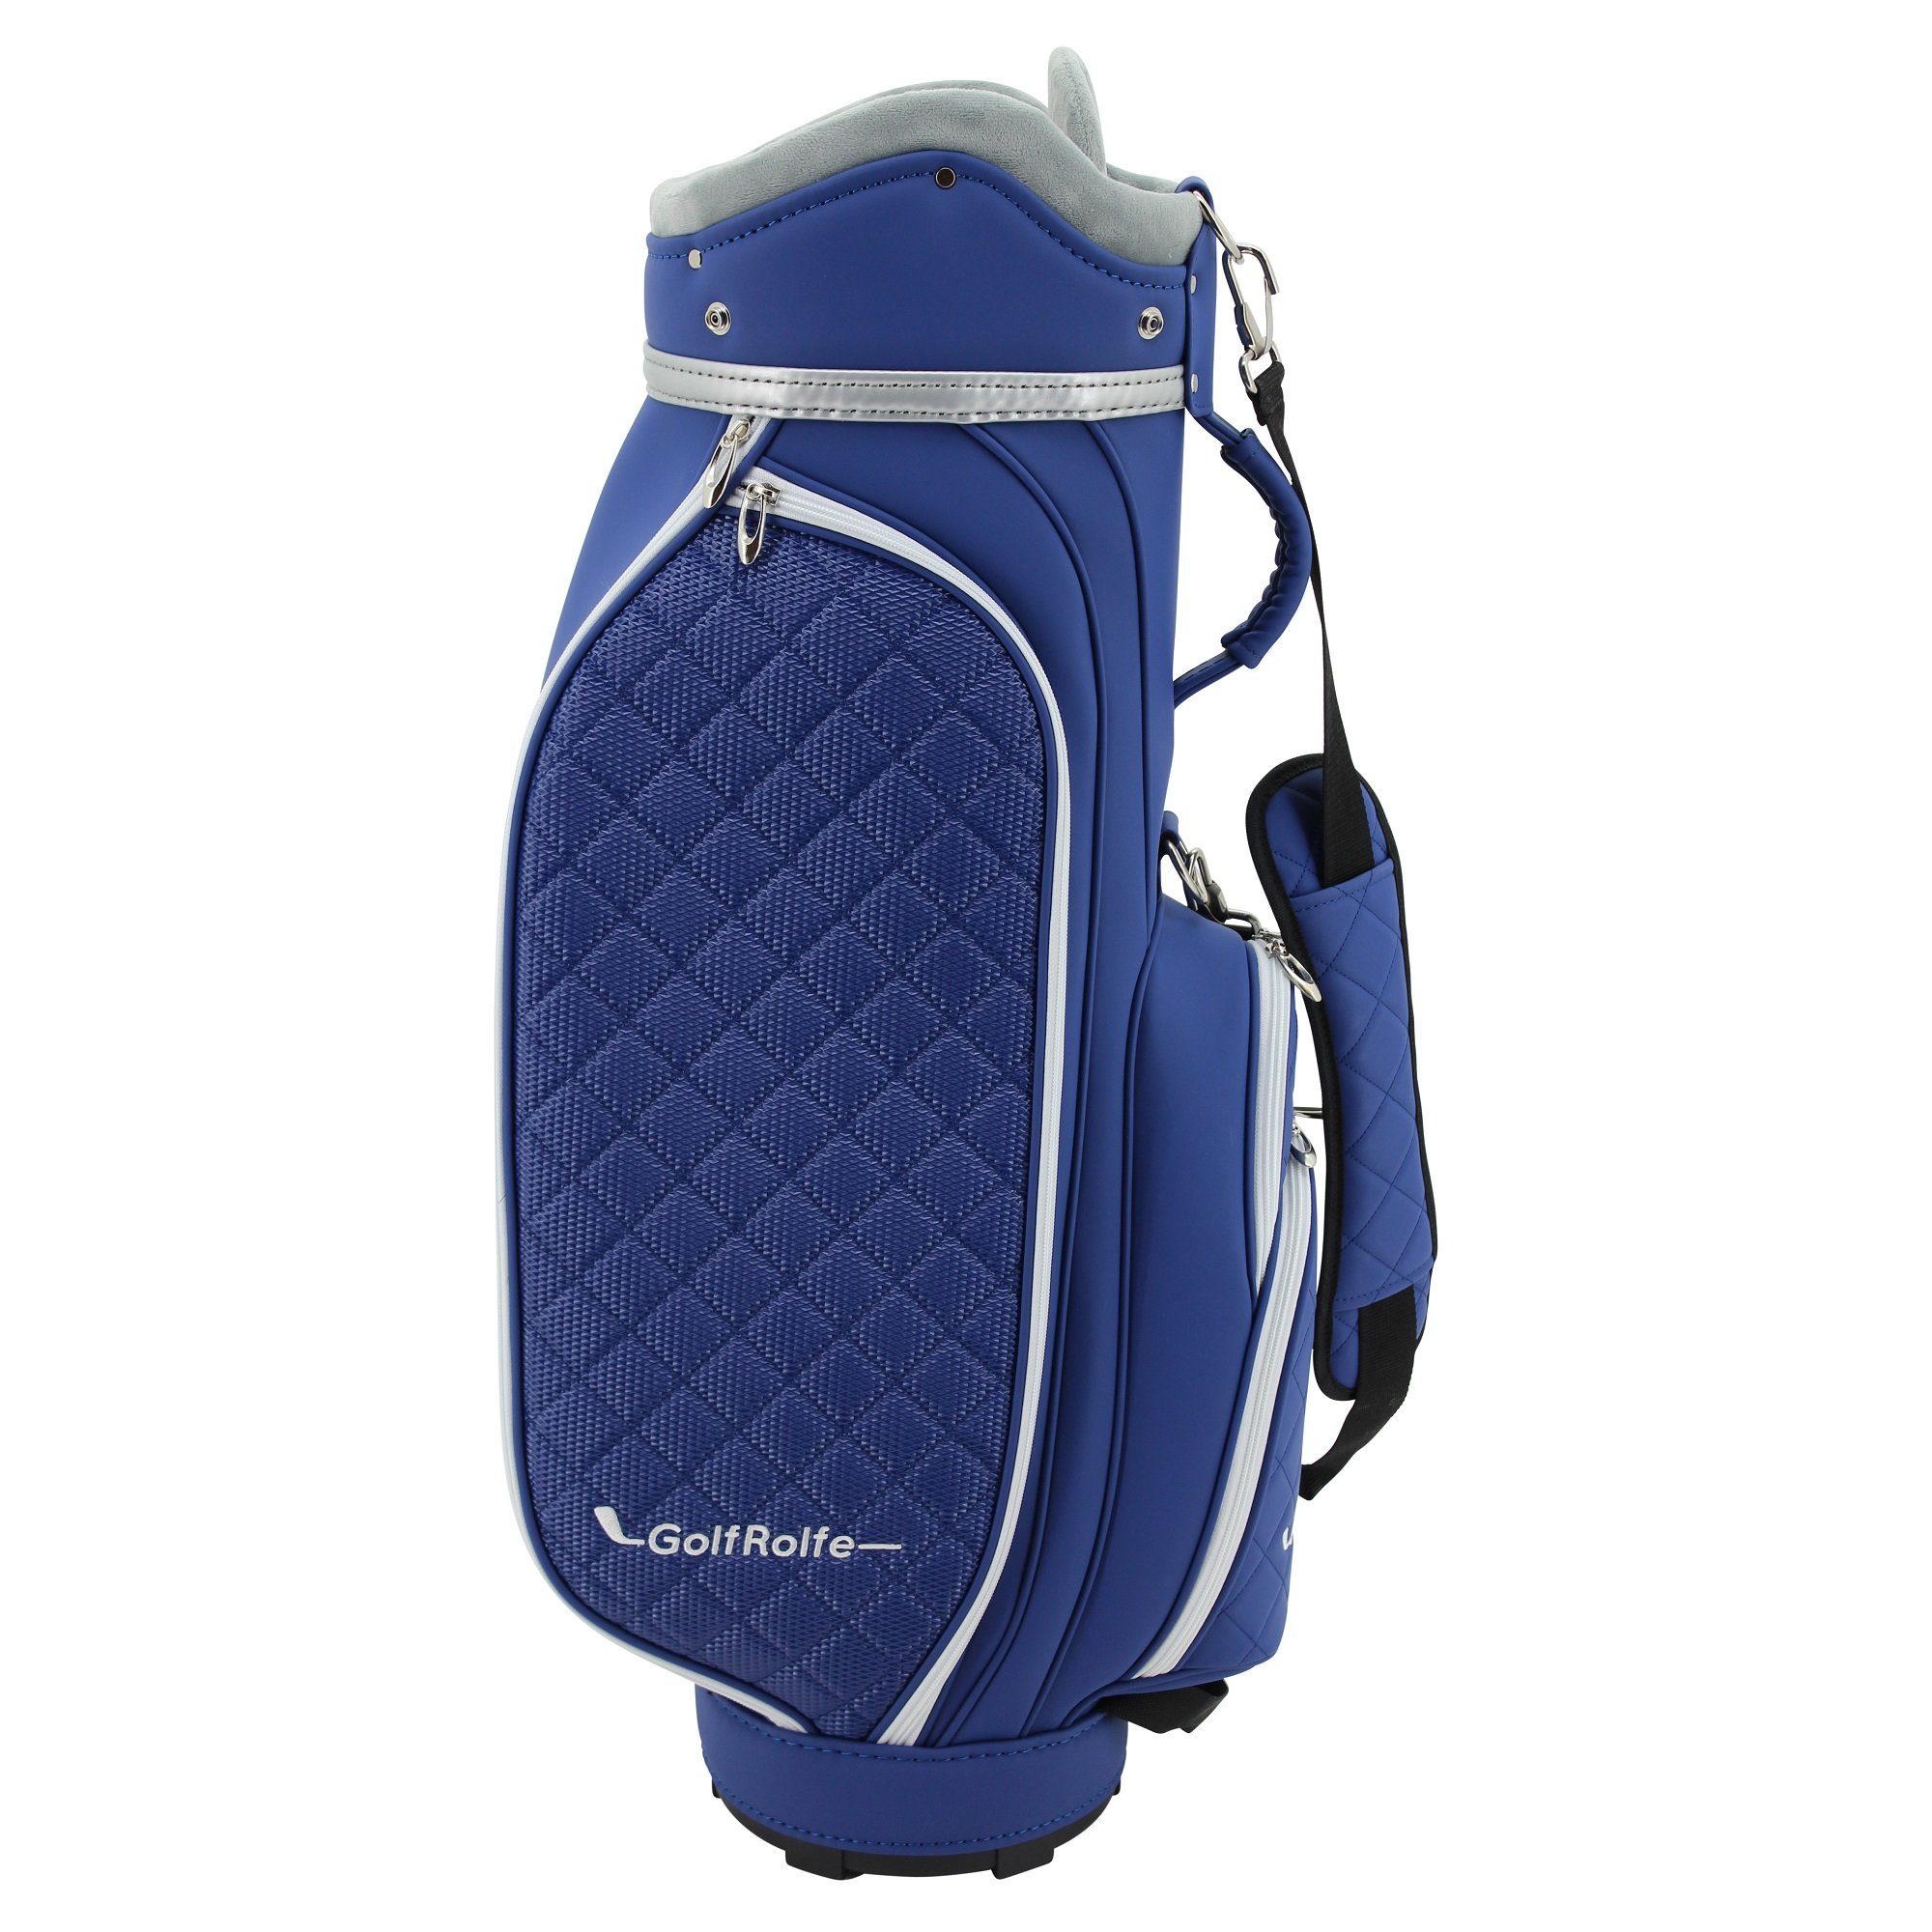 GolfRolfe Golfballtasche GolfRolfe 14293 Golfbag blau - Design Golftasche Caddybag | Sporttaschen